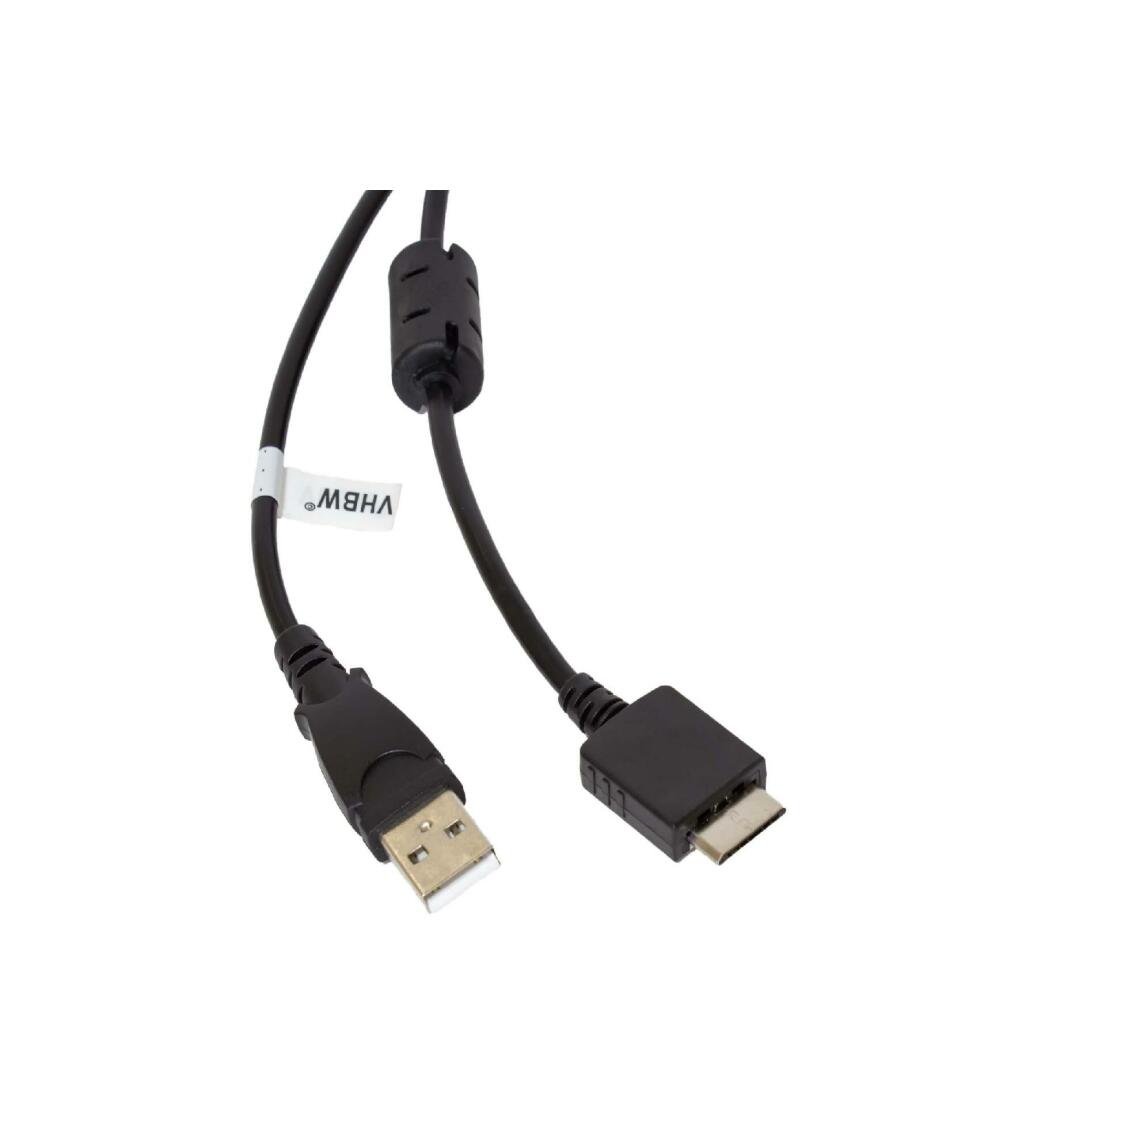 Vhbw - vhbw câble de données USB (type A sur lecteur MP3) câble de chargement compatible avec Sony Walkman NWZ-S764, NWZ-S765 lecteur MP3 - noir, 150cm - Alimentation modulaire